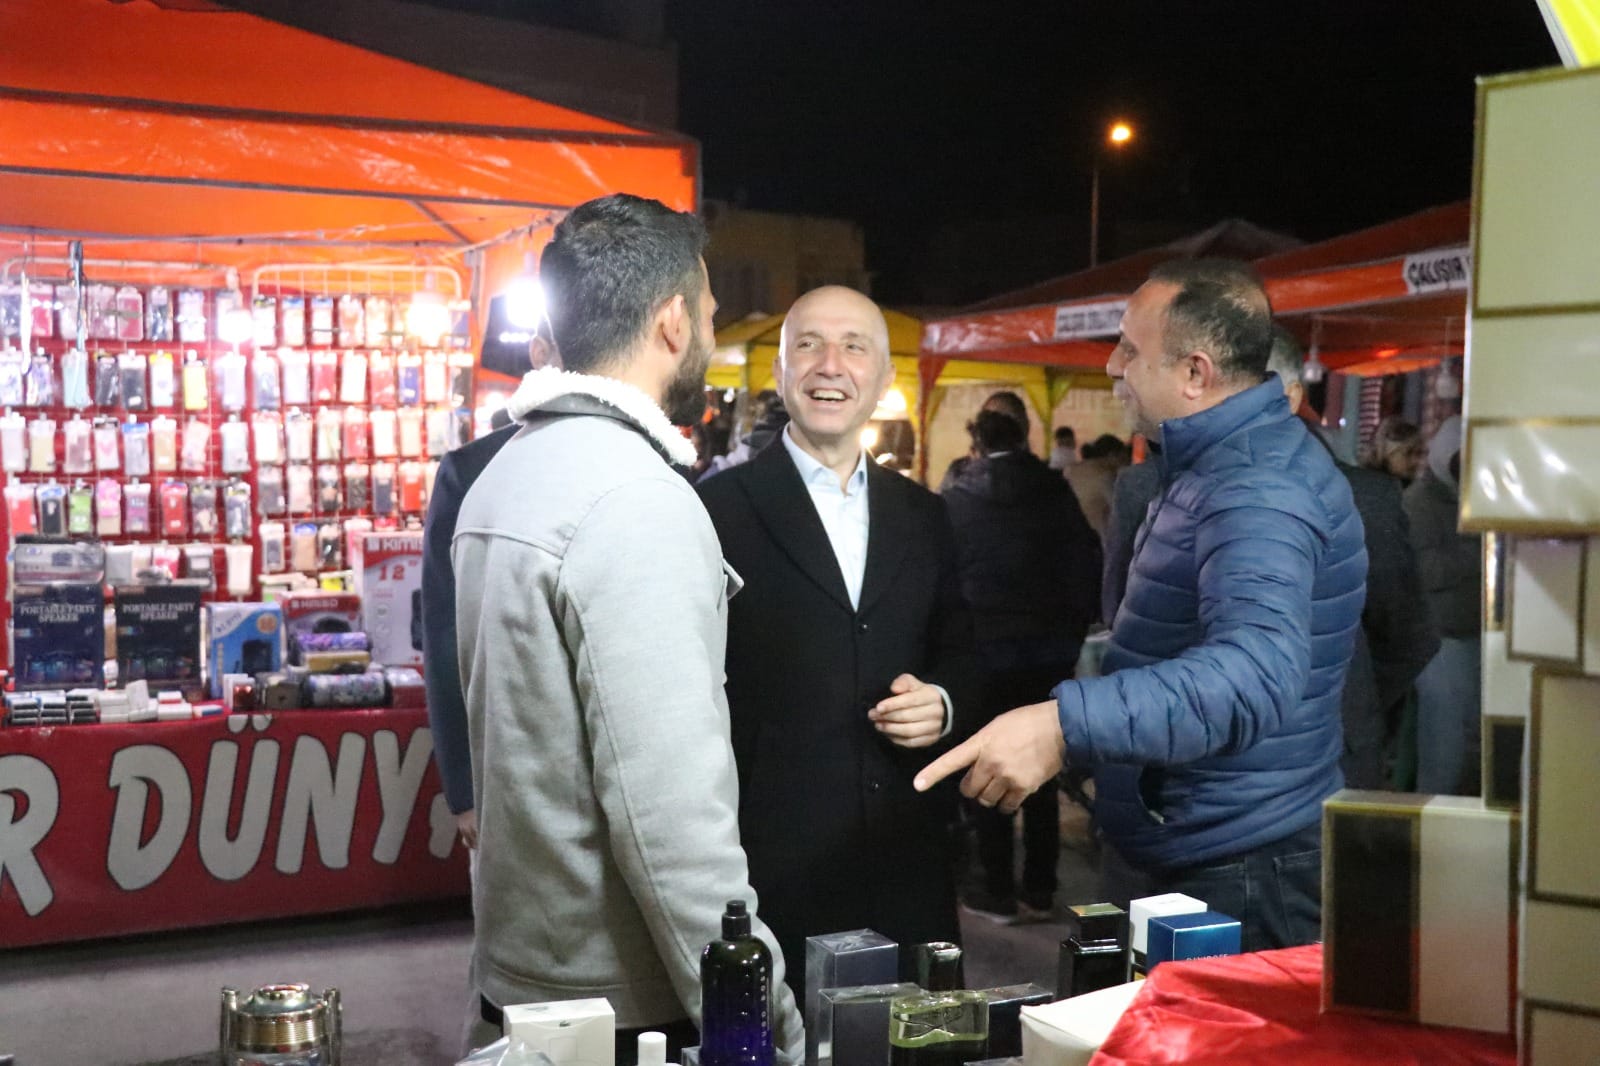 Sarayköy Belediyesi eski Ramazanları aratmayan birbirinden güzel etkinlikleri vatandaşlarla buluşturuyor. Ramazan etkinlikleri ilk gününde renkli görüntülere sahne oldu, vatandaşların yoğun ilgisiyle gerçekleştirildi.